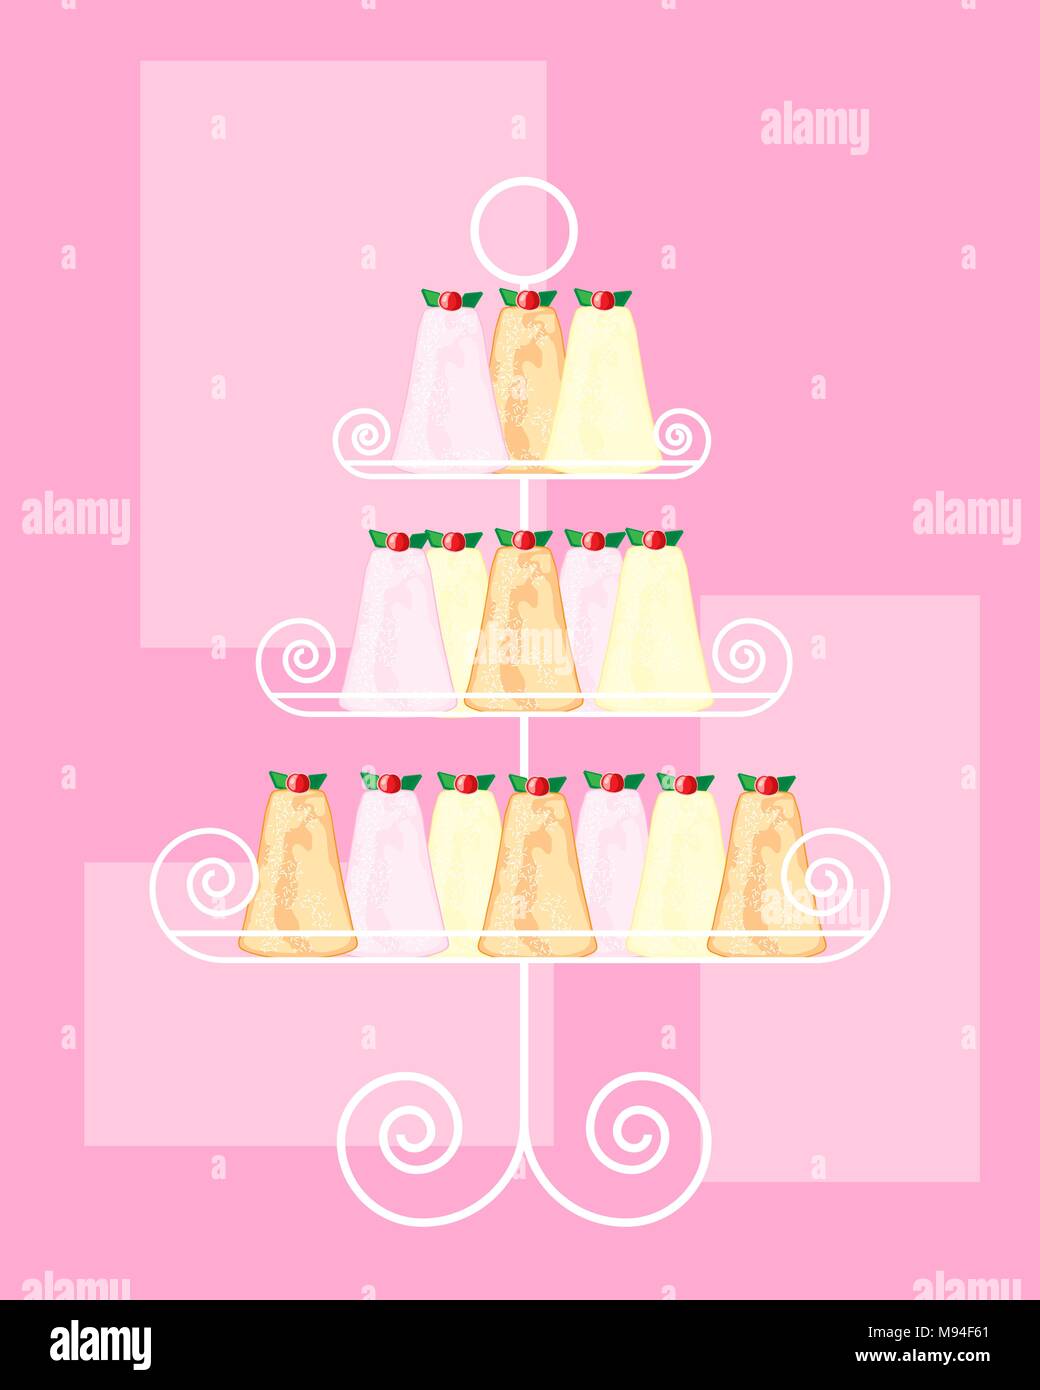 Un vecteur illustration au format eps d'un cake stand avec résumé anglais madeleine des gâteaux sur un fond rose Illustration de Vecteur